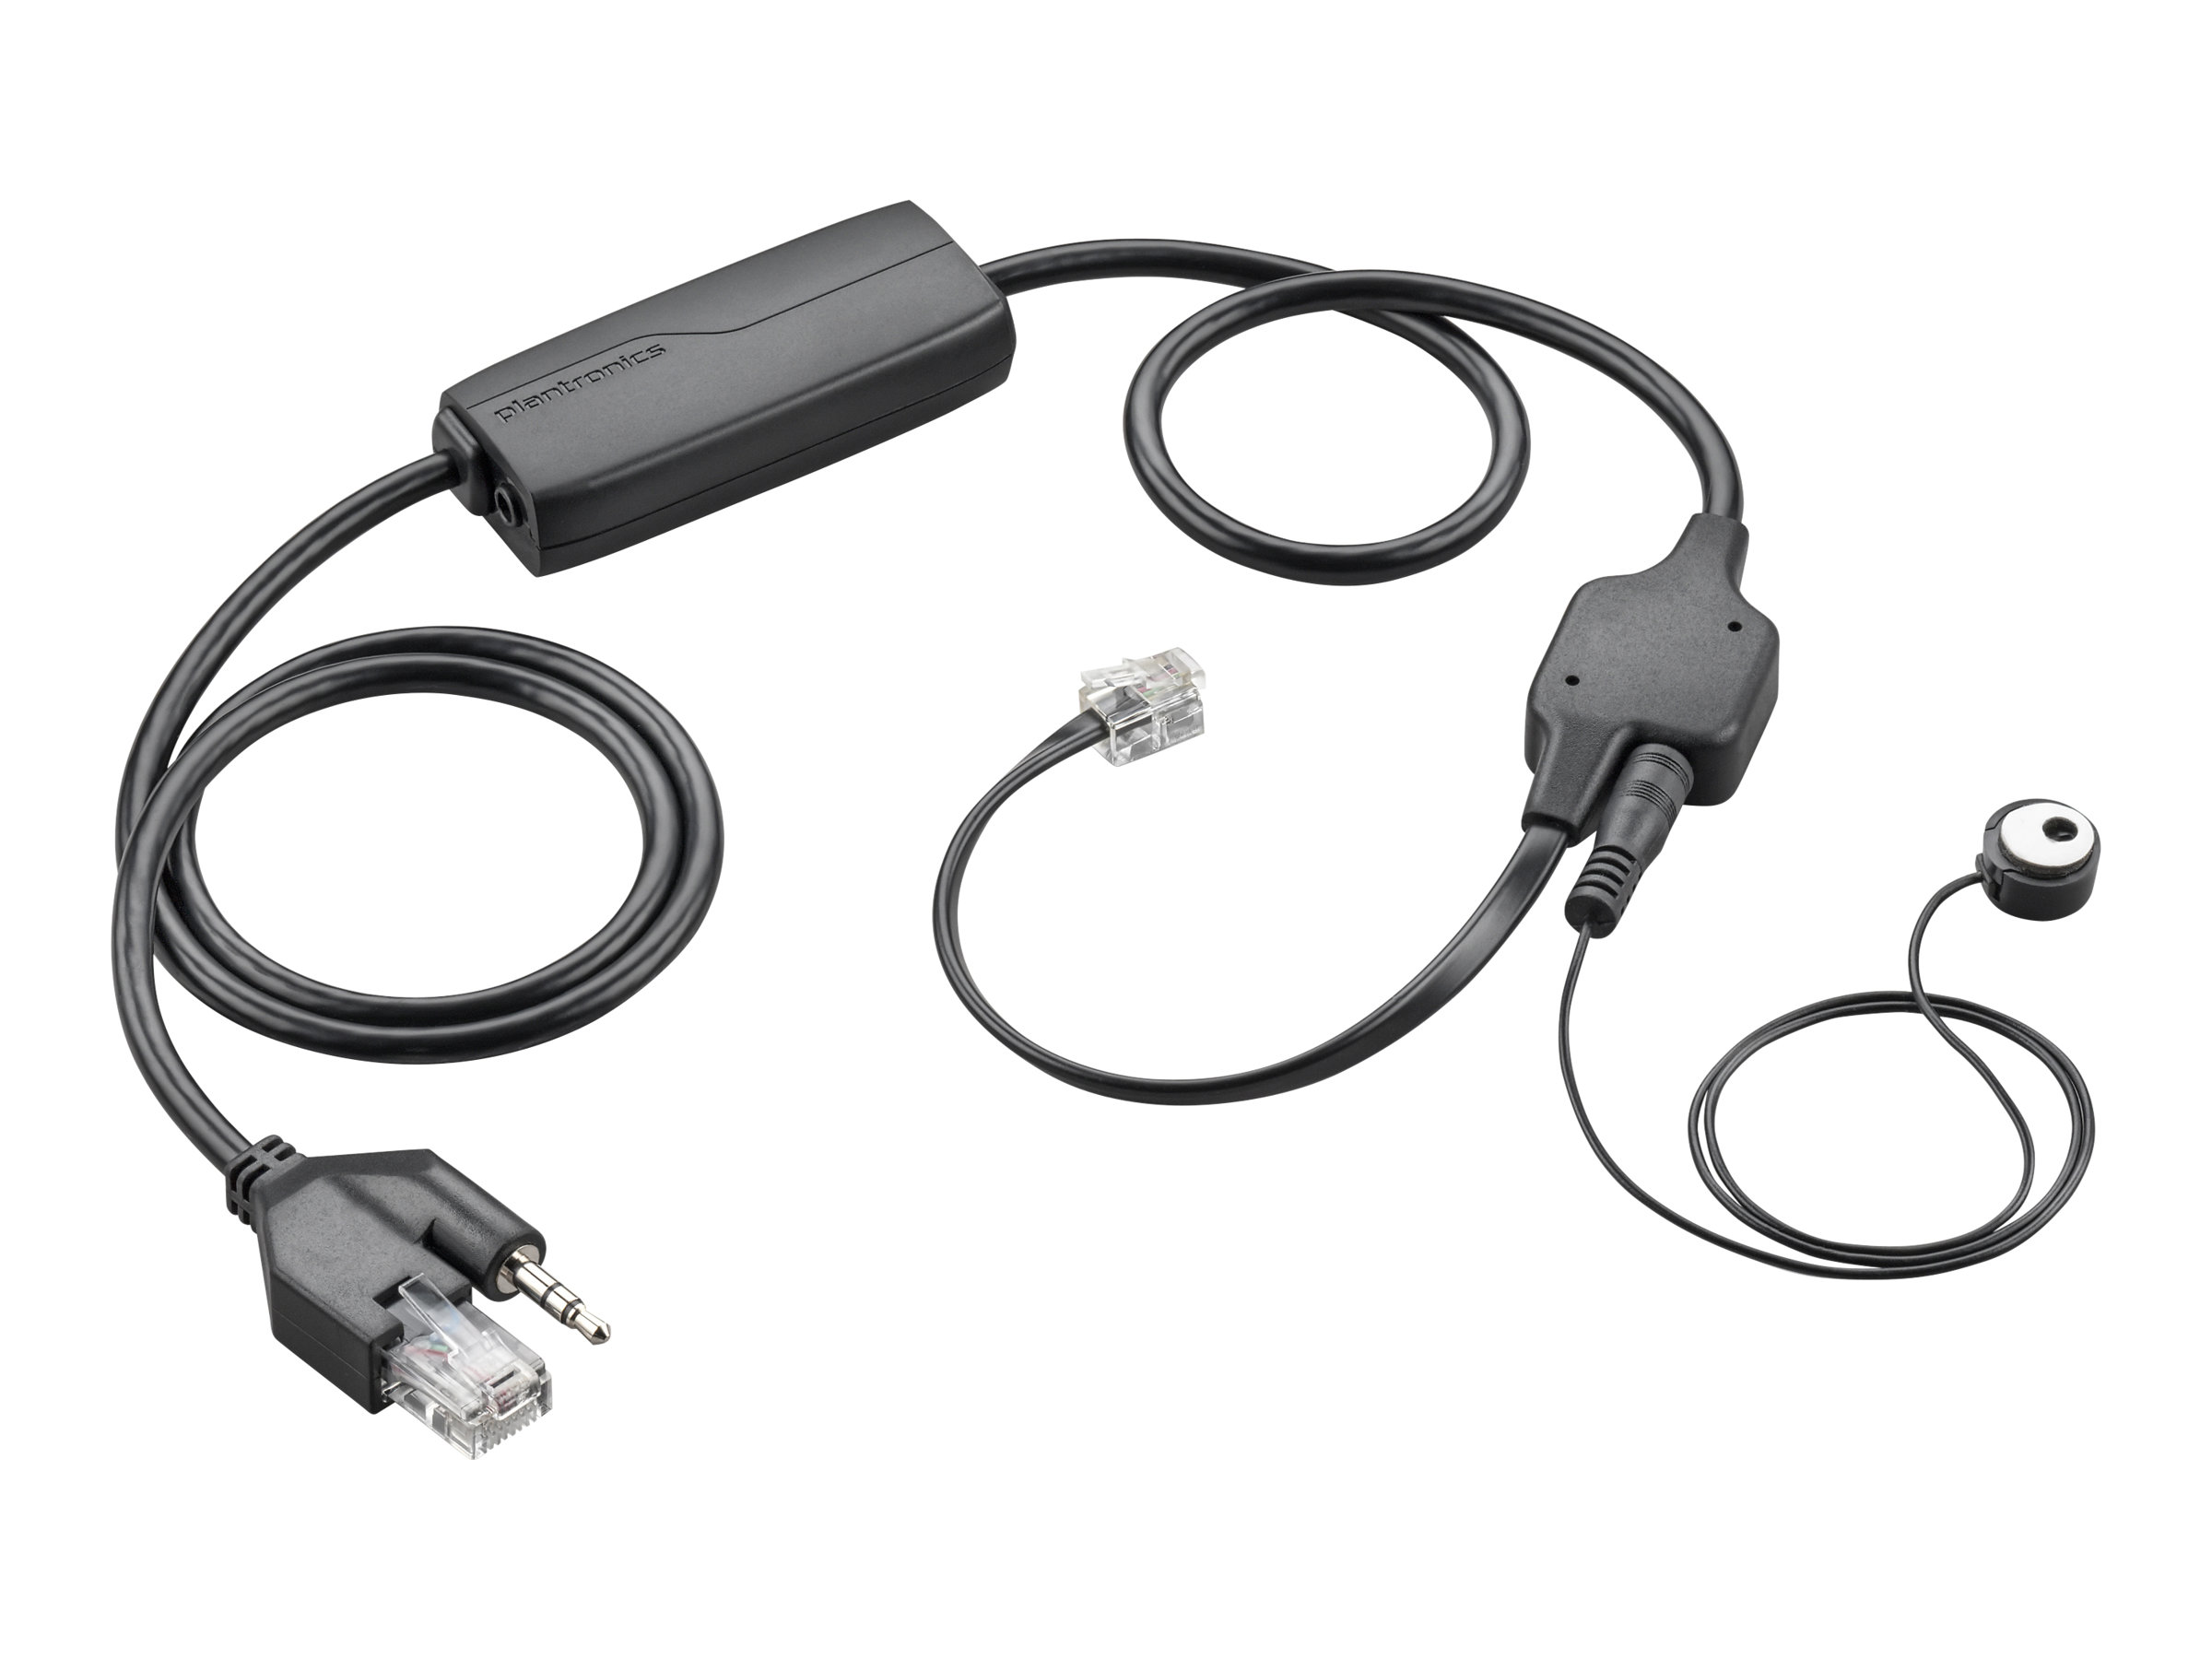 Poly EHS APV-63 - Elektronischer Hook-Switch Adapter für Telefon - für CS 510, 520, 540; Savi W710, W720, W730, W740, W745; Savi